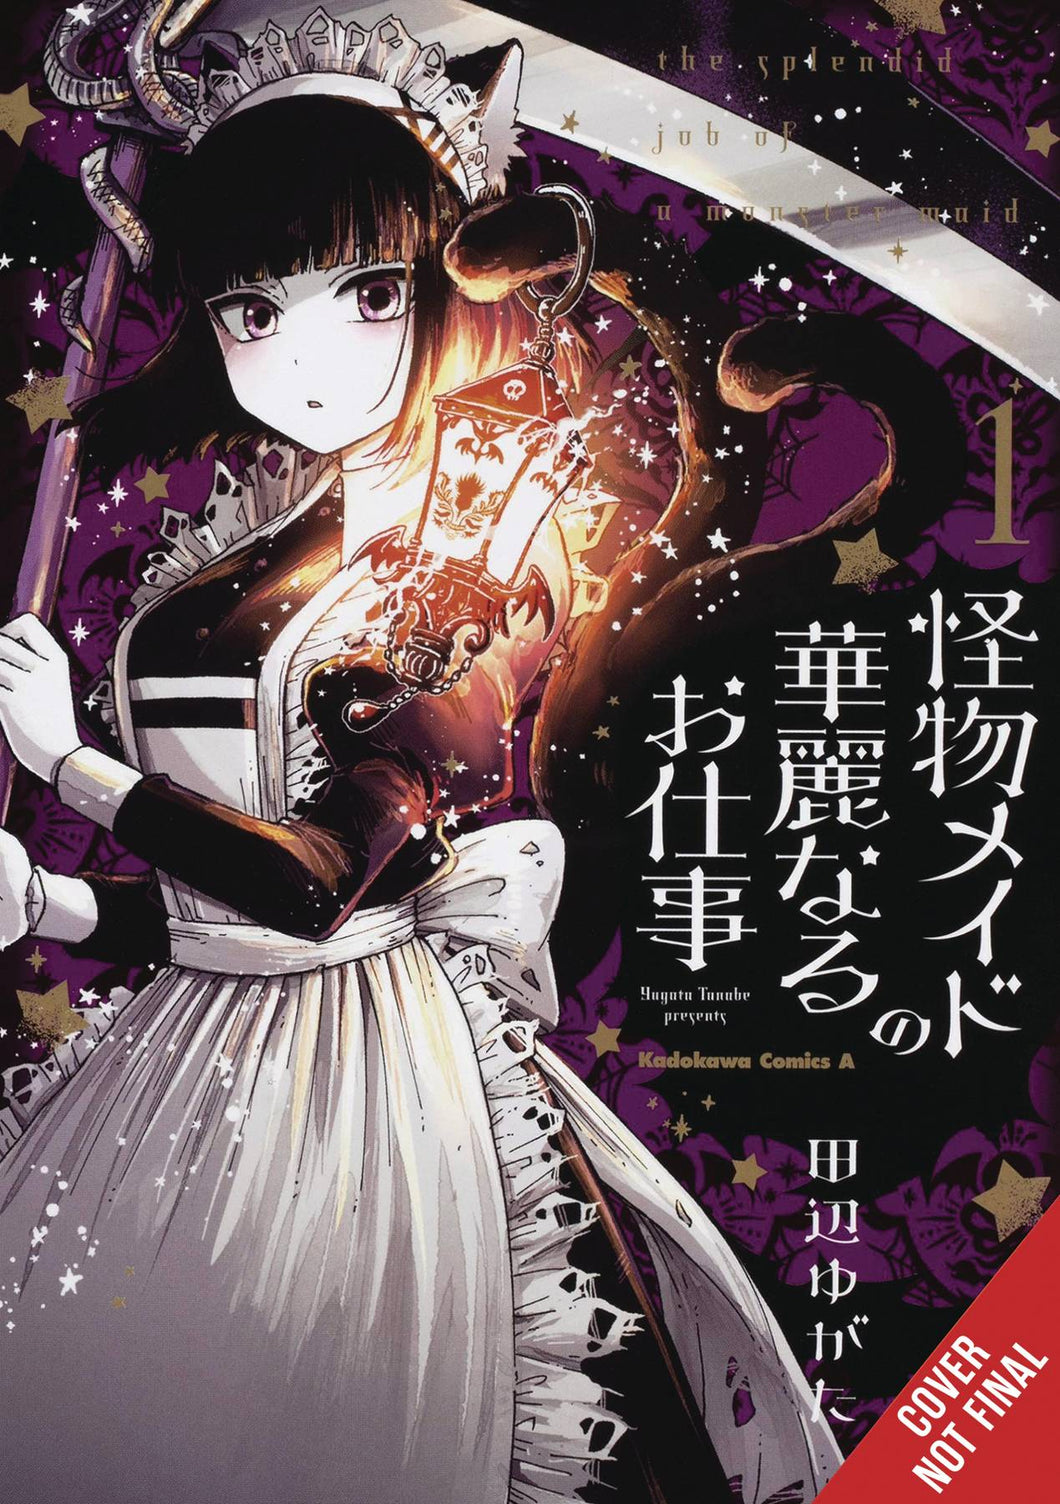 Splendid Work of Monster Maid GN Vol 01 - Books